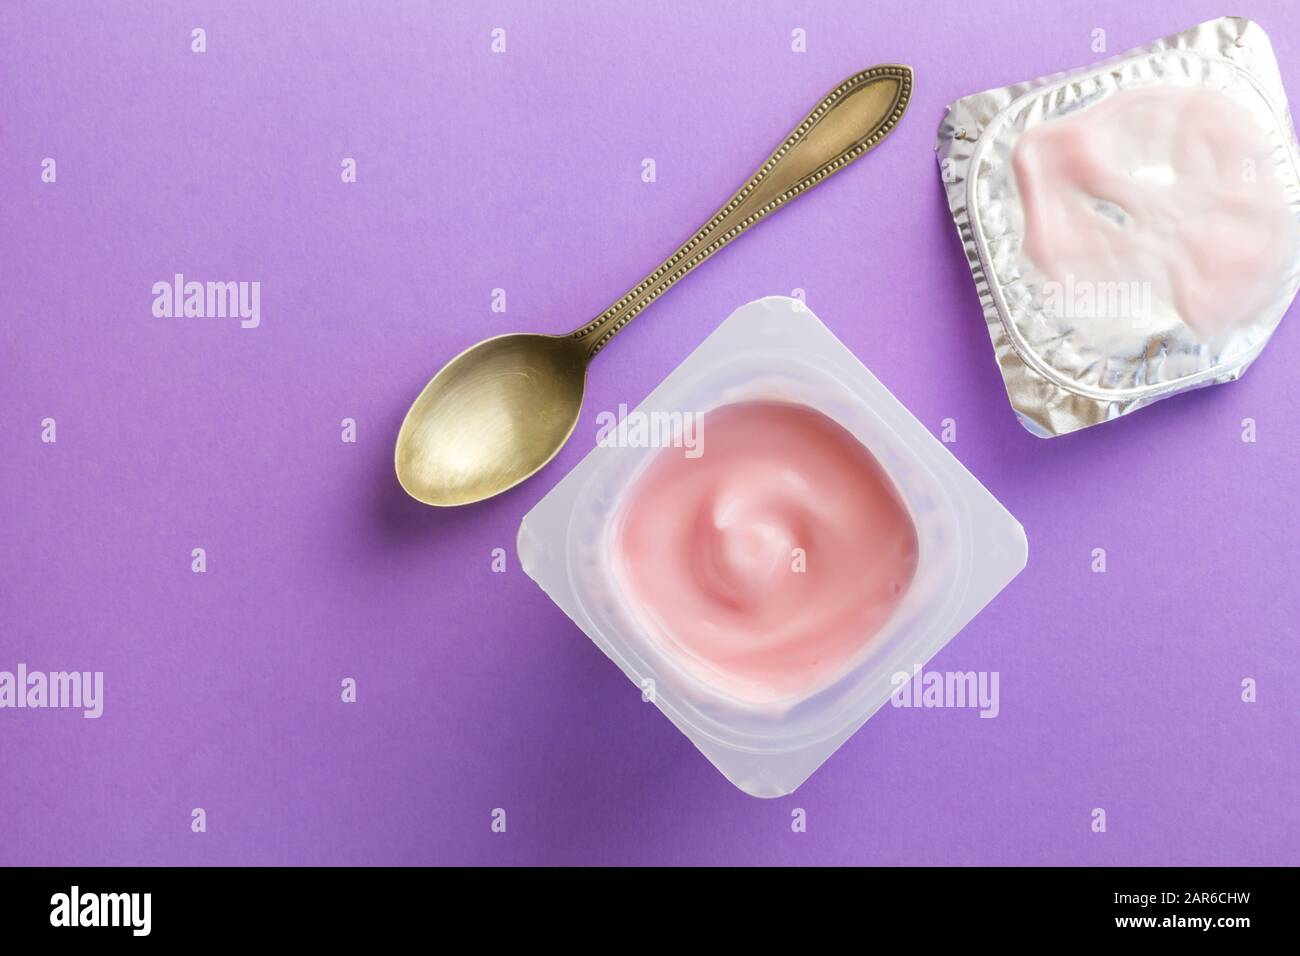 Gesunder Erdbeerobst aromatisierter Joghurt mit natürlicher Farbgebung in Kunststoffbecher isoliert auf violettem Hintergrund mit kleinem Löffel und Foliendeckel - Draufsicht Stockfoto